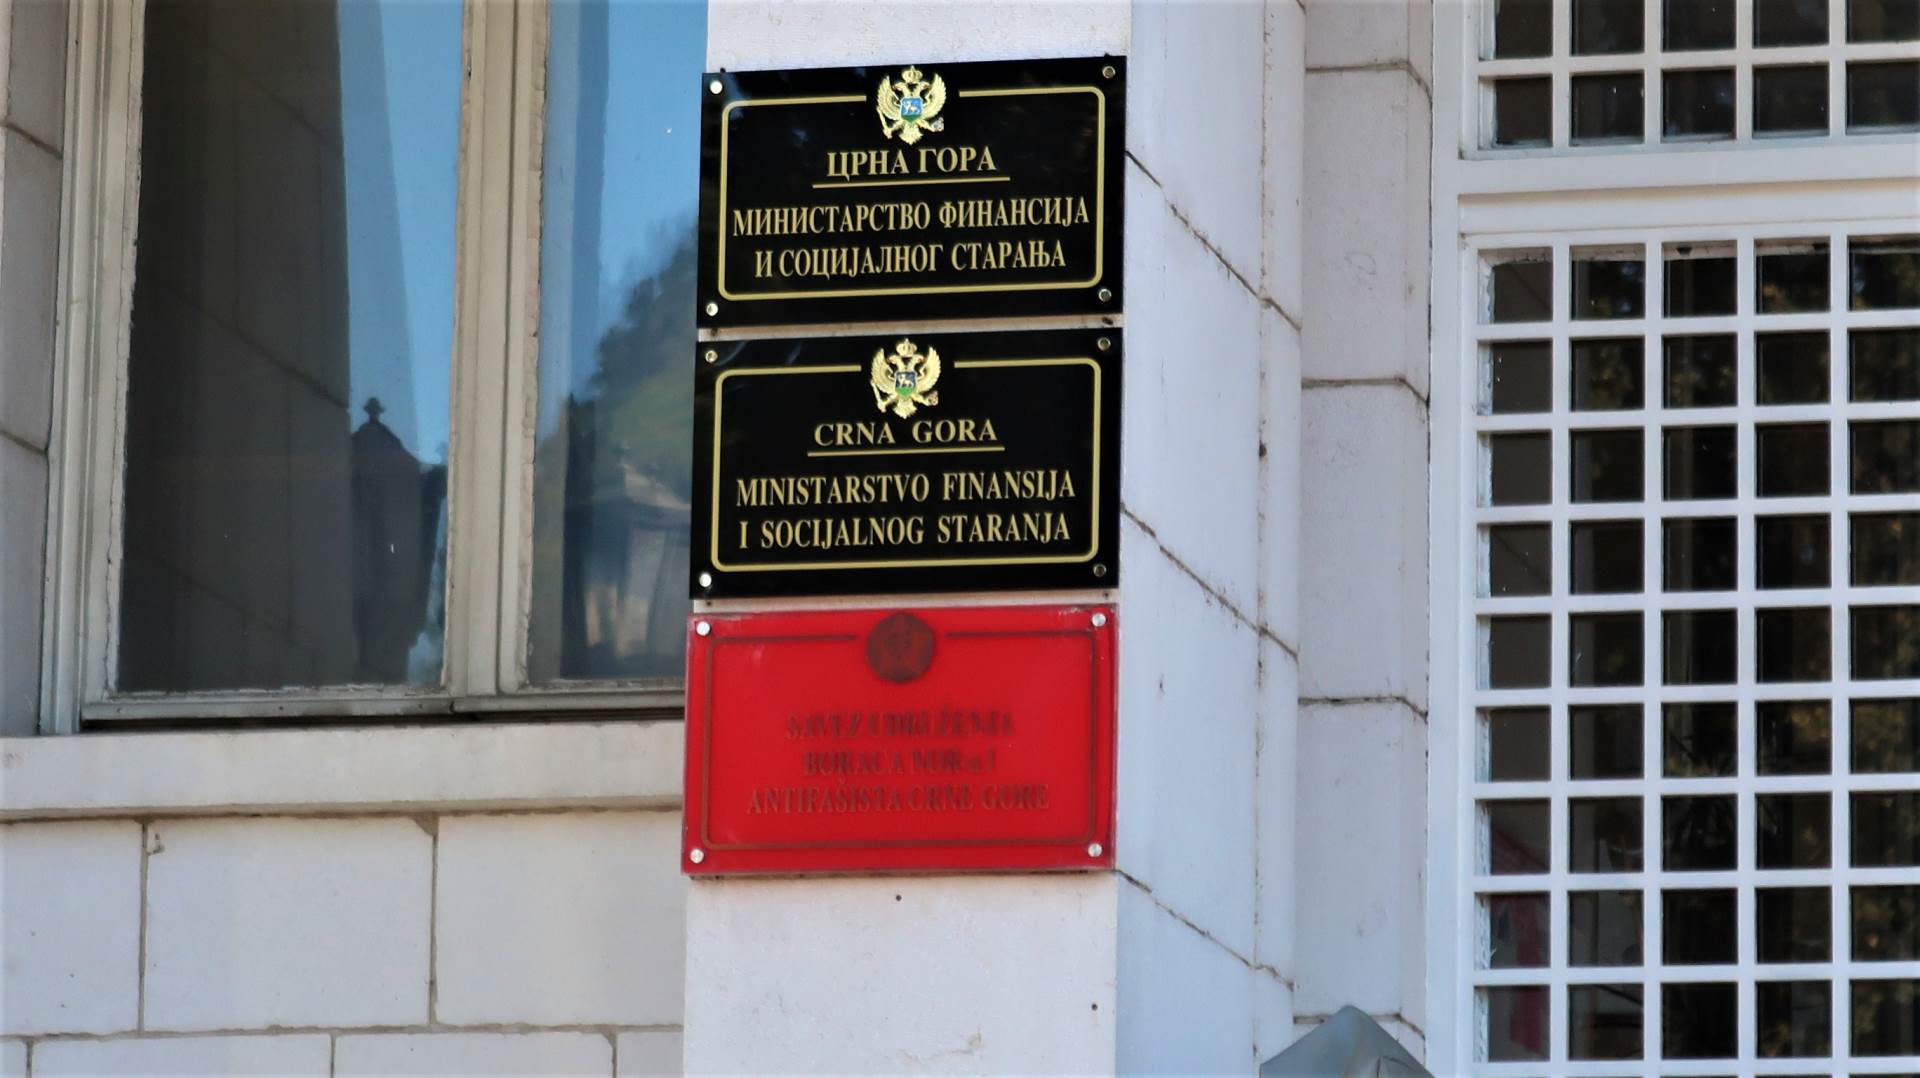  Ministarstvo finansija sakupilo 20 miliona za državnu kasu  